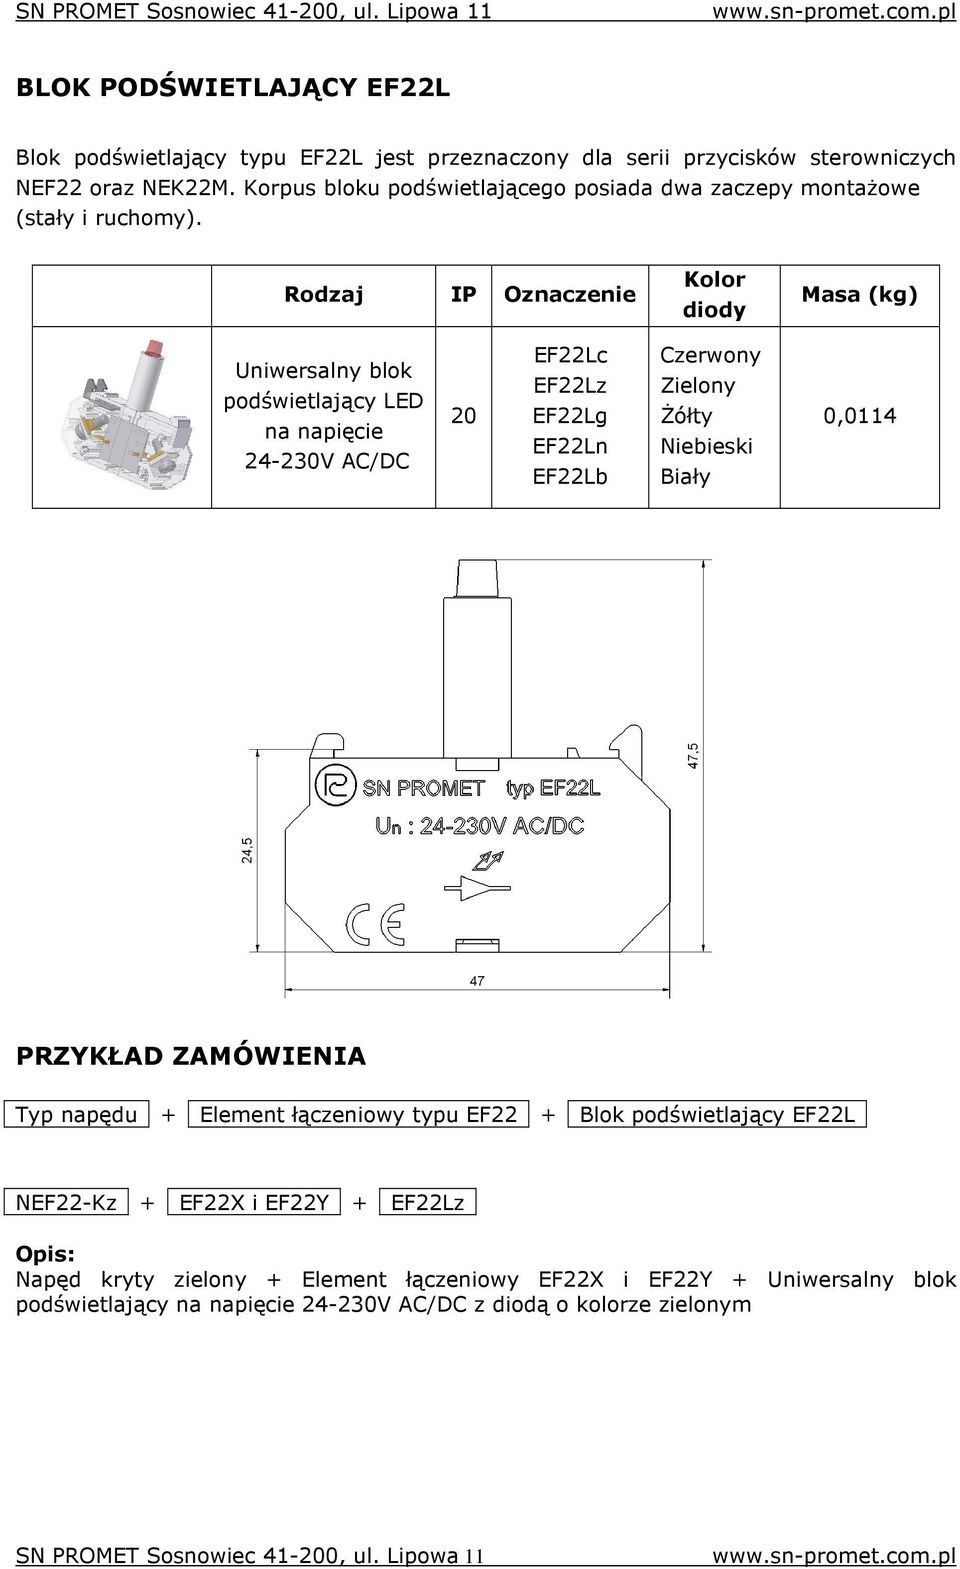 Rodzaj IP Oznaczenie Kolor diody Masa (kg) Uniwersalny blok podświetlający LED na napięcie 24-230V AC/DC 20 EF22Lc EF22Lz EF22Lg EF22Ln EF22Lb Czerwony Zielony śółty